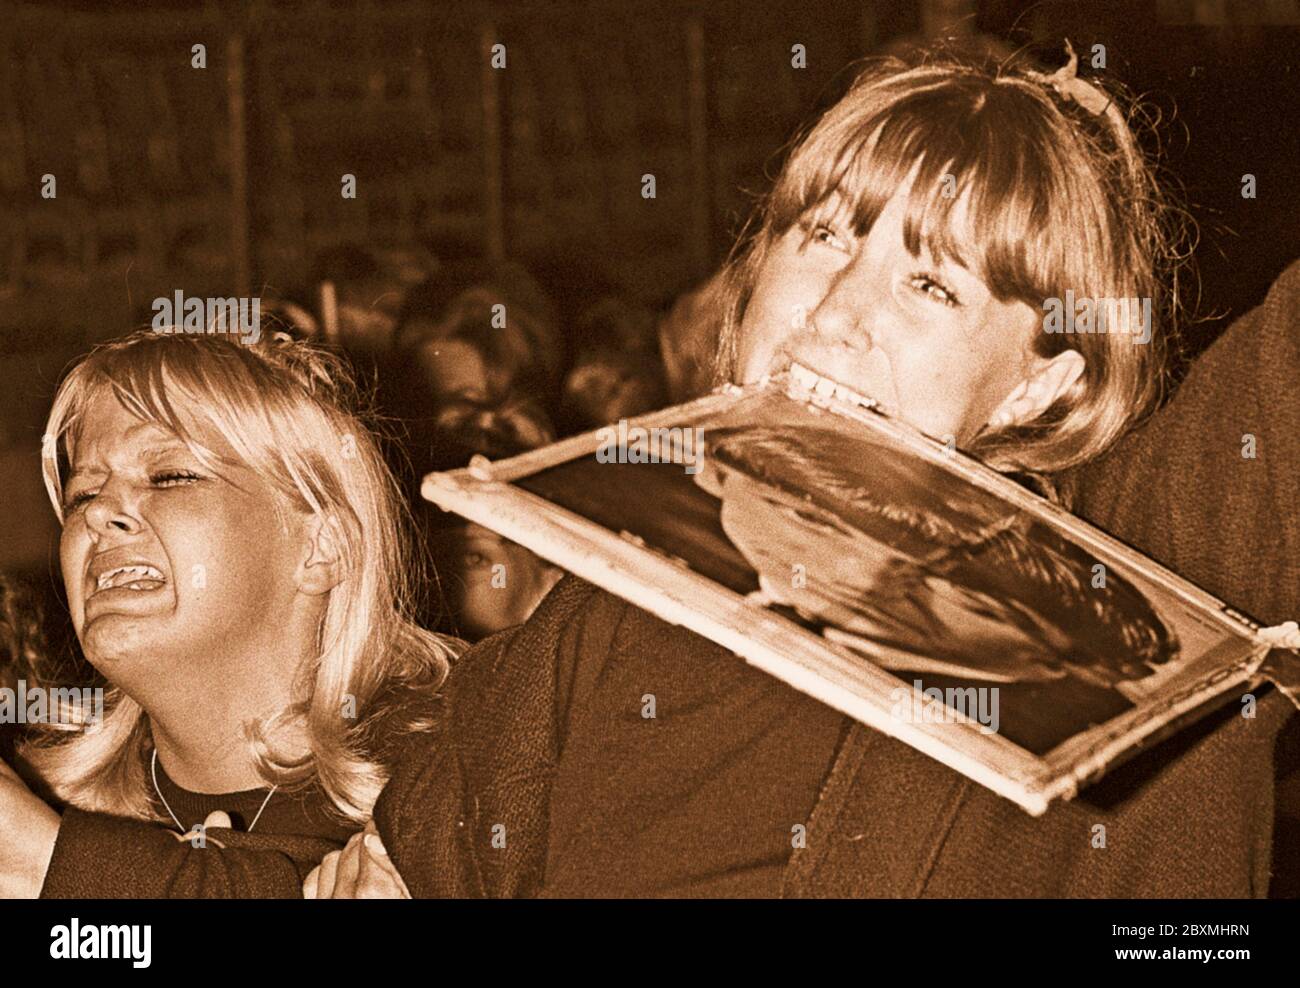 Beatles in den 1960er Jahren. Fans bei einem Beatles-Konzert in Stockholm 1964. Juli 28 im Johanneshov Stadion. Eine Szene aus dem Konzert und das Publikum, das in Erpressung ist. Das Mädchen rechts hält ein Porträt von Ringo Starr in ihrem Mund. Stockfoto